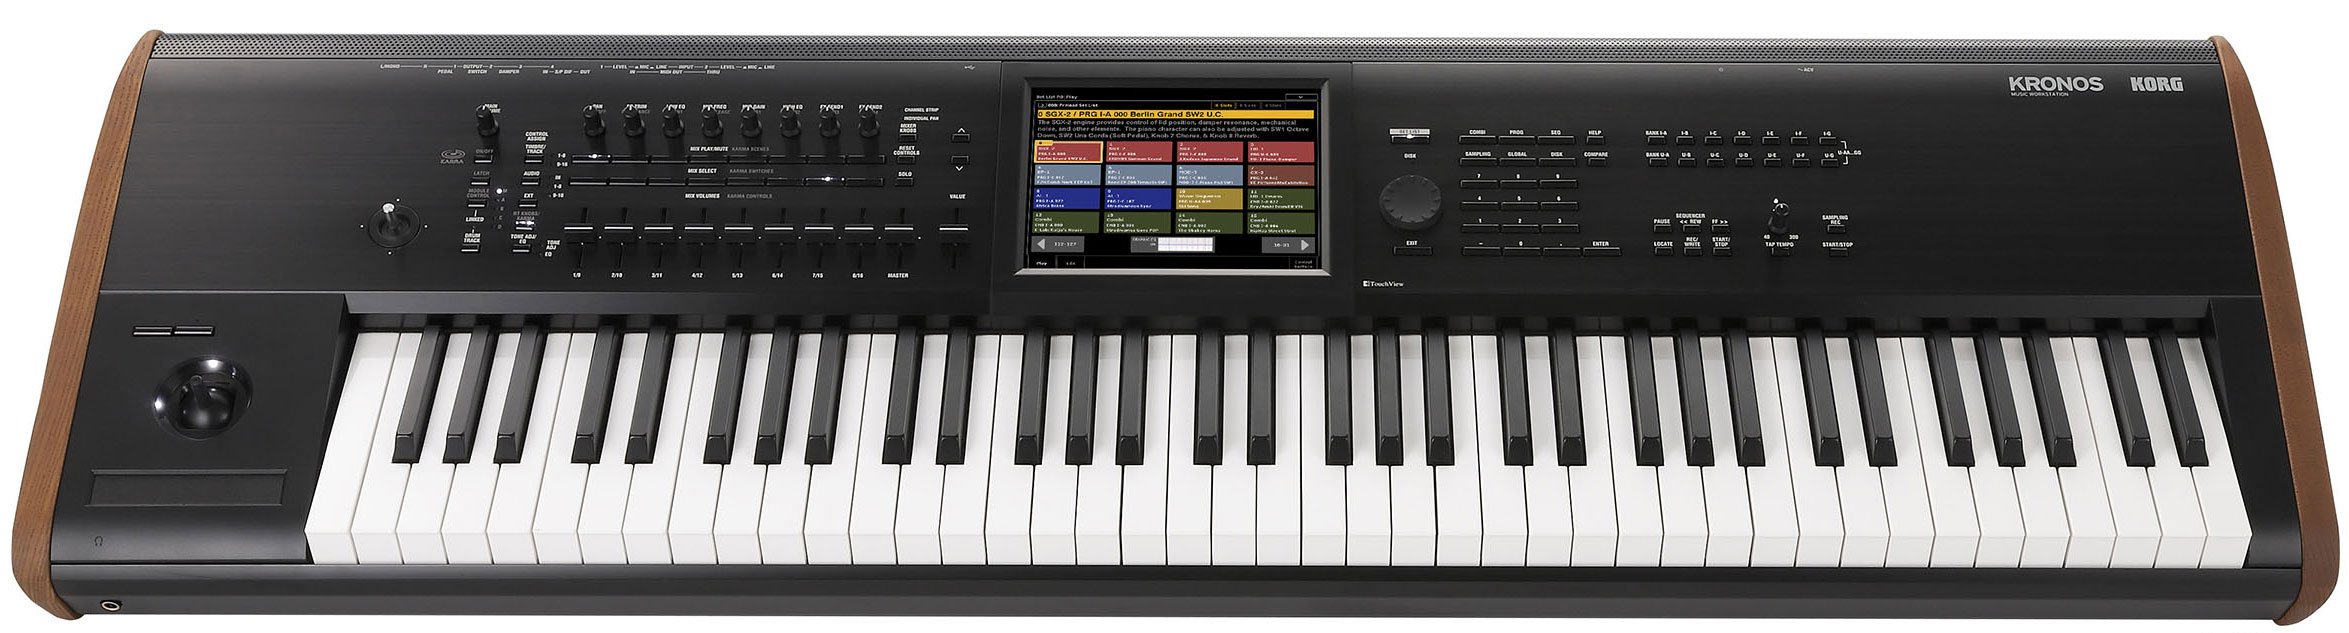 KORG KRONOS2-73 музыкальная рабочая станция/семплер, 76 клавиш, тип синтеза: SGX-1, EP-1, HD-1 от музыкального магазина МОРОЗ МЬЮЗИК